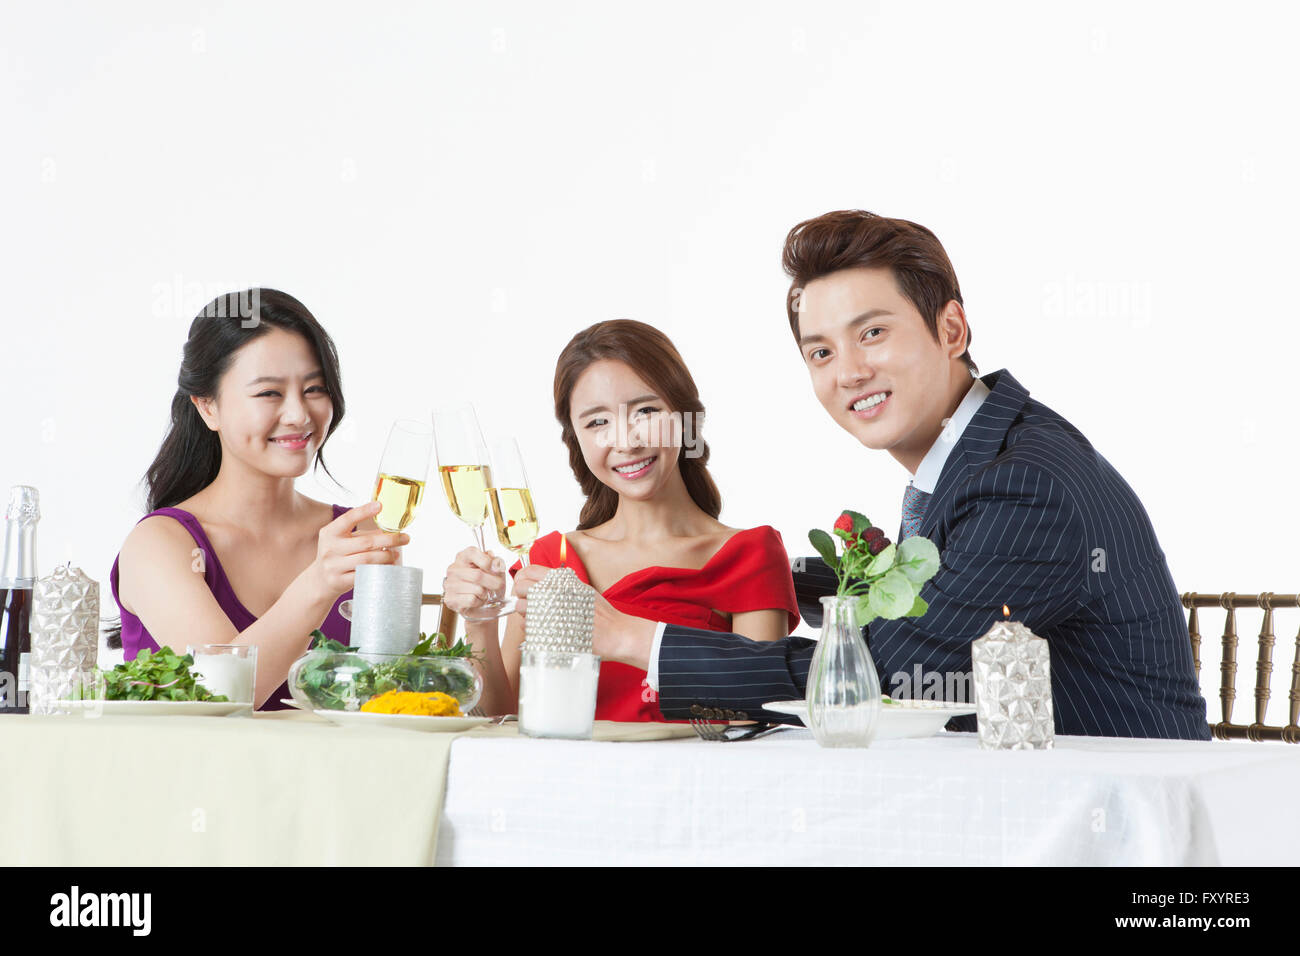 Seite Ansicht Porträt der jungen lächelnde Menschen hält Champagner Gläser am Tisch Stockfoto